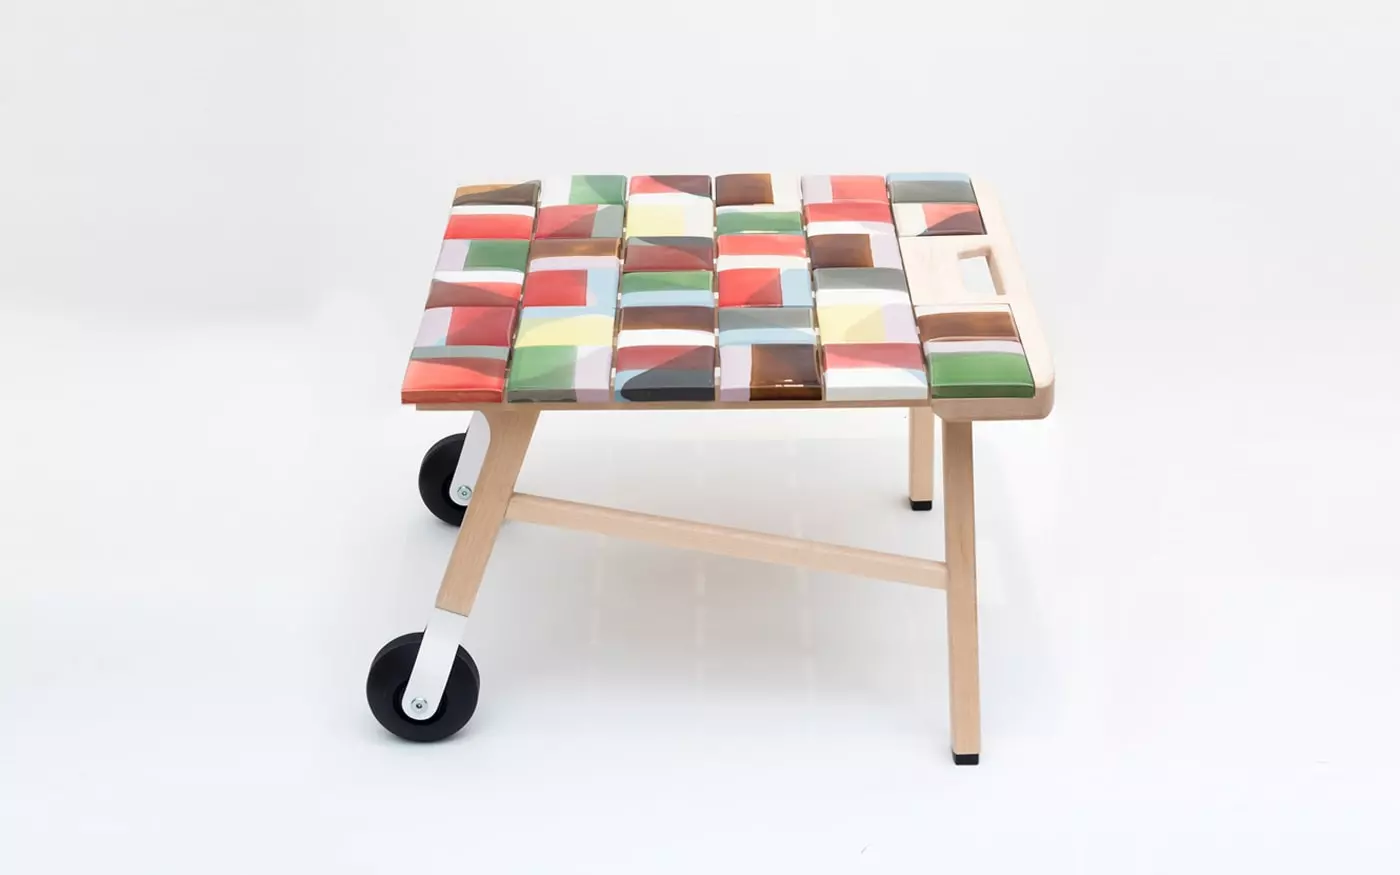 Tiles side table - Hella Jongerius - Chair - Galerie kreo